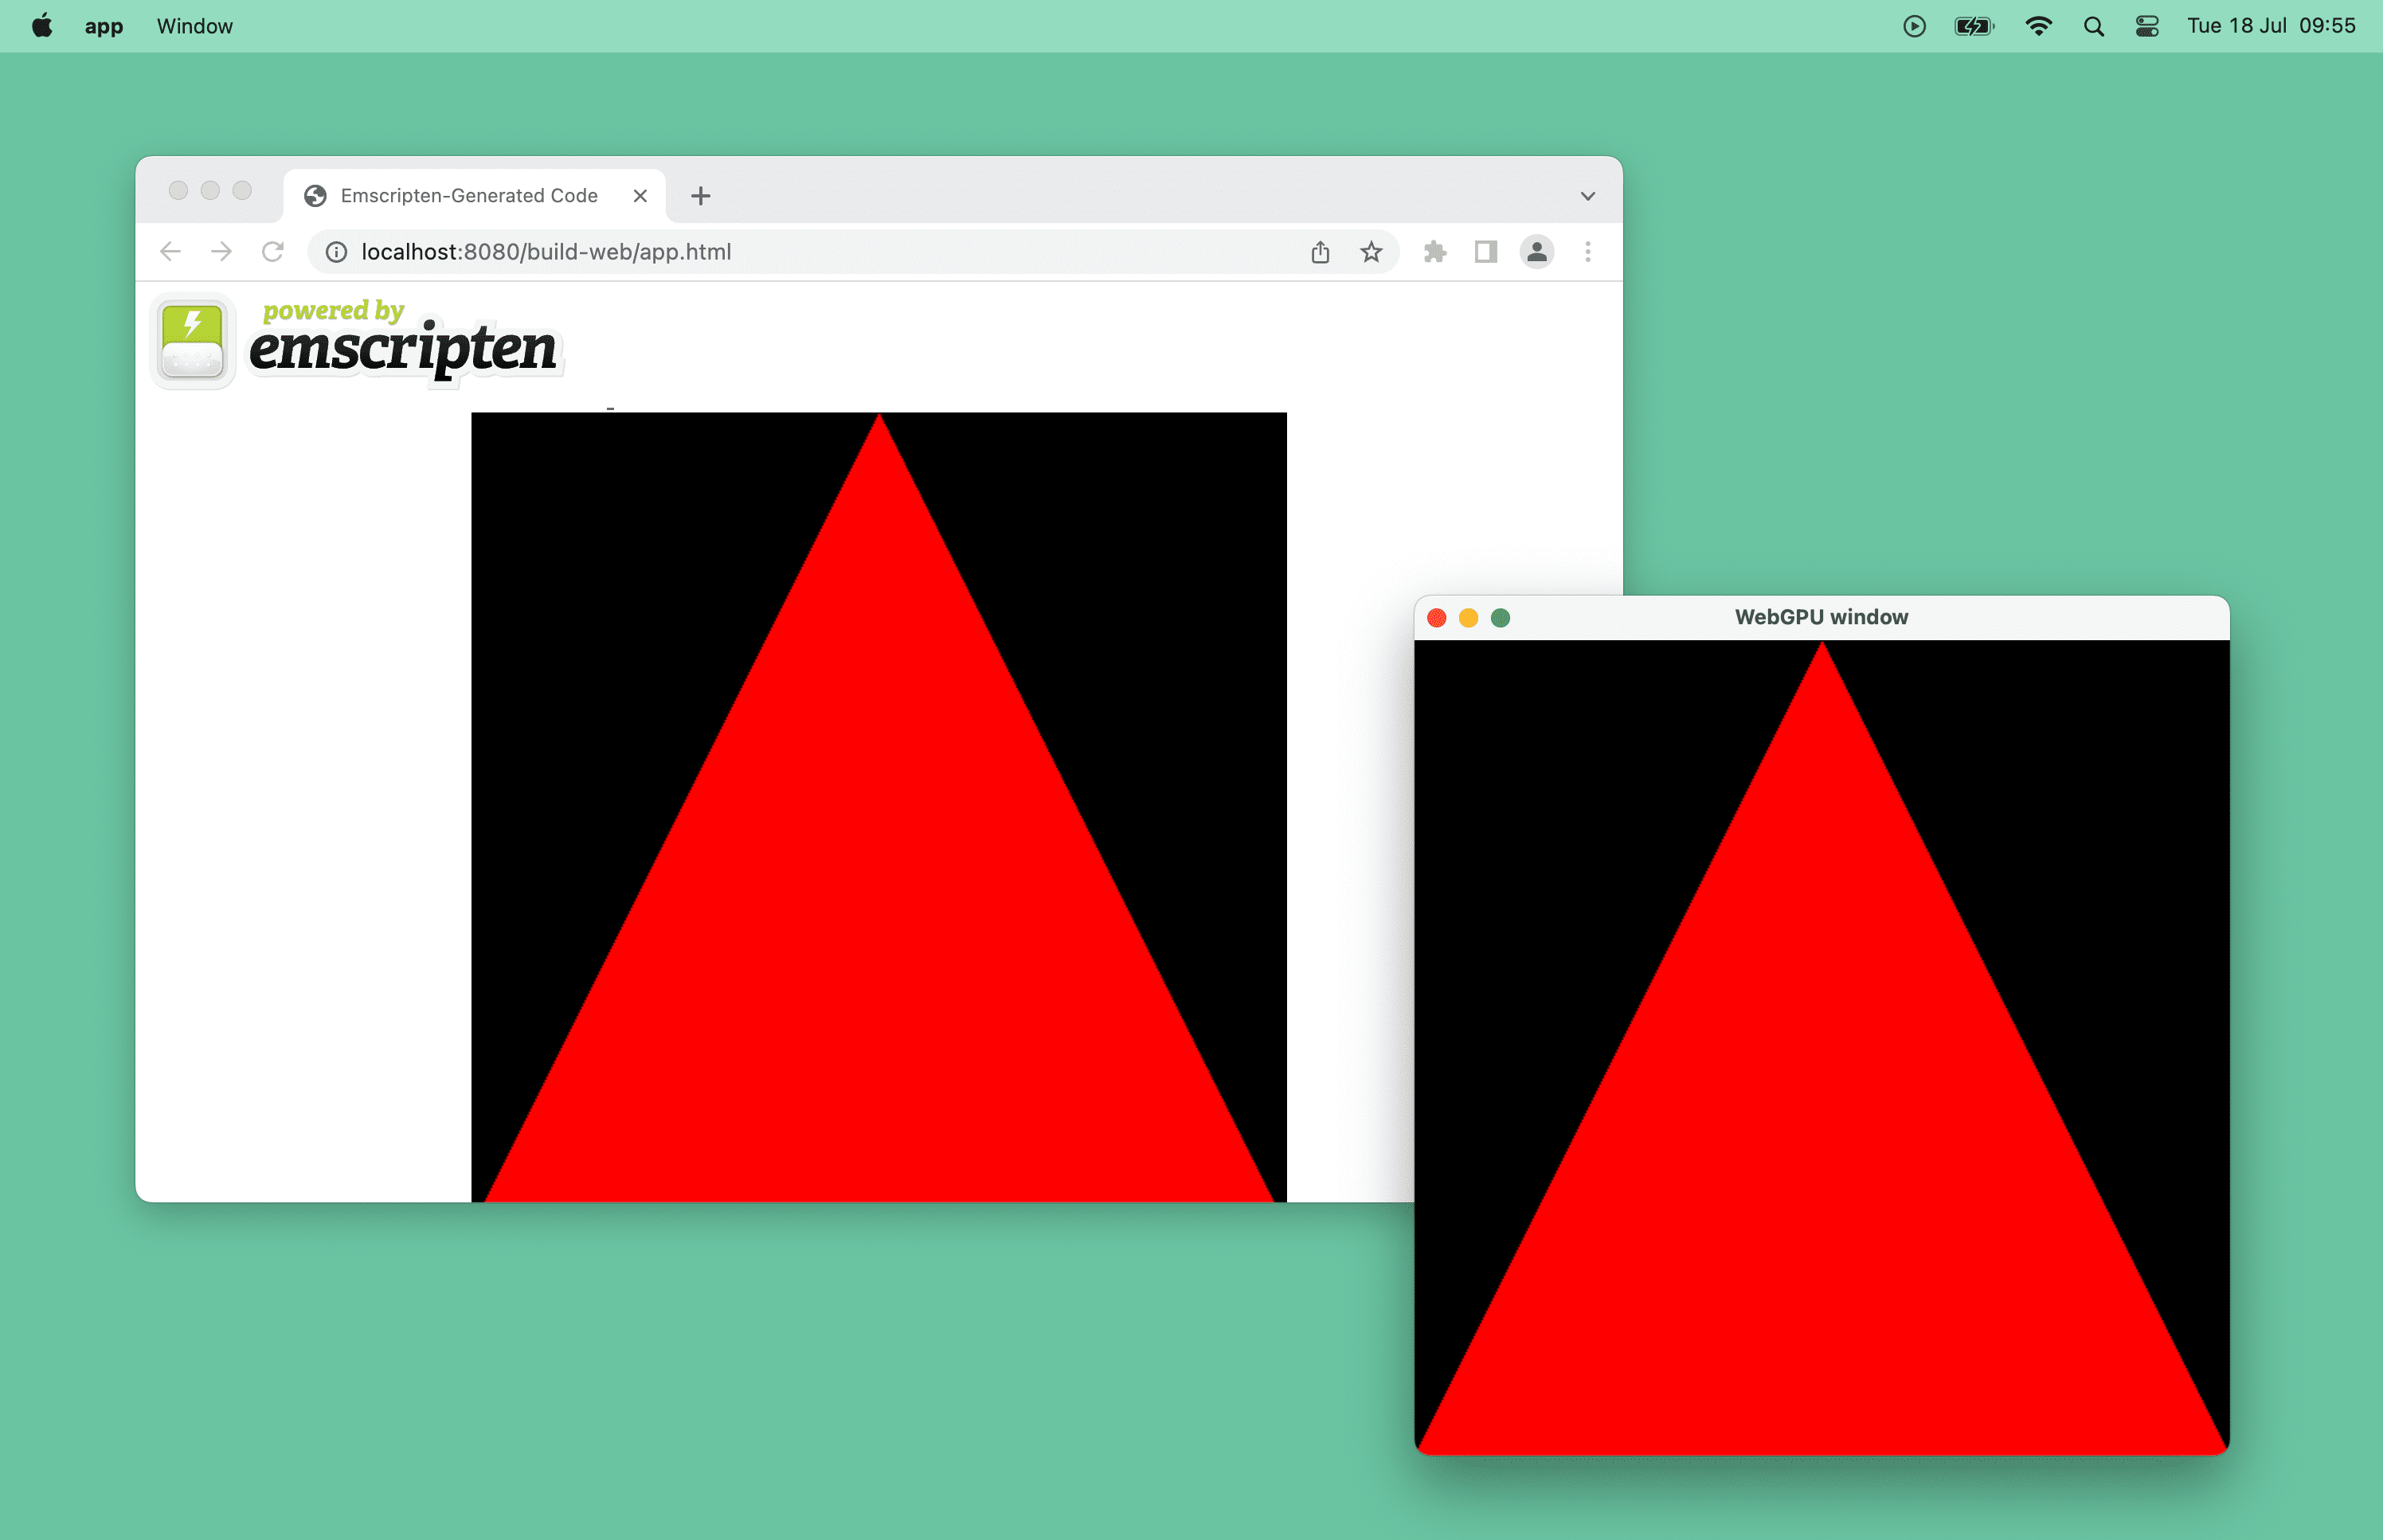 Captura de tela de um triângulo vermelho com a tecnologia da WebGPU em uma janela do navegador e de uma janela de computador no macOS.